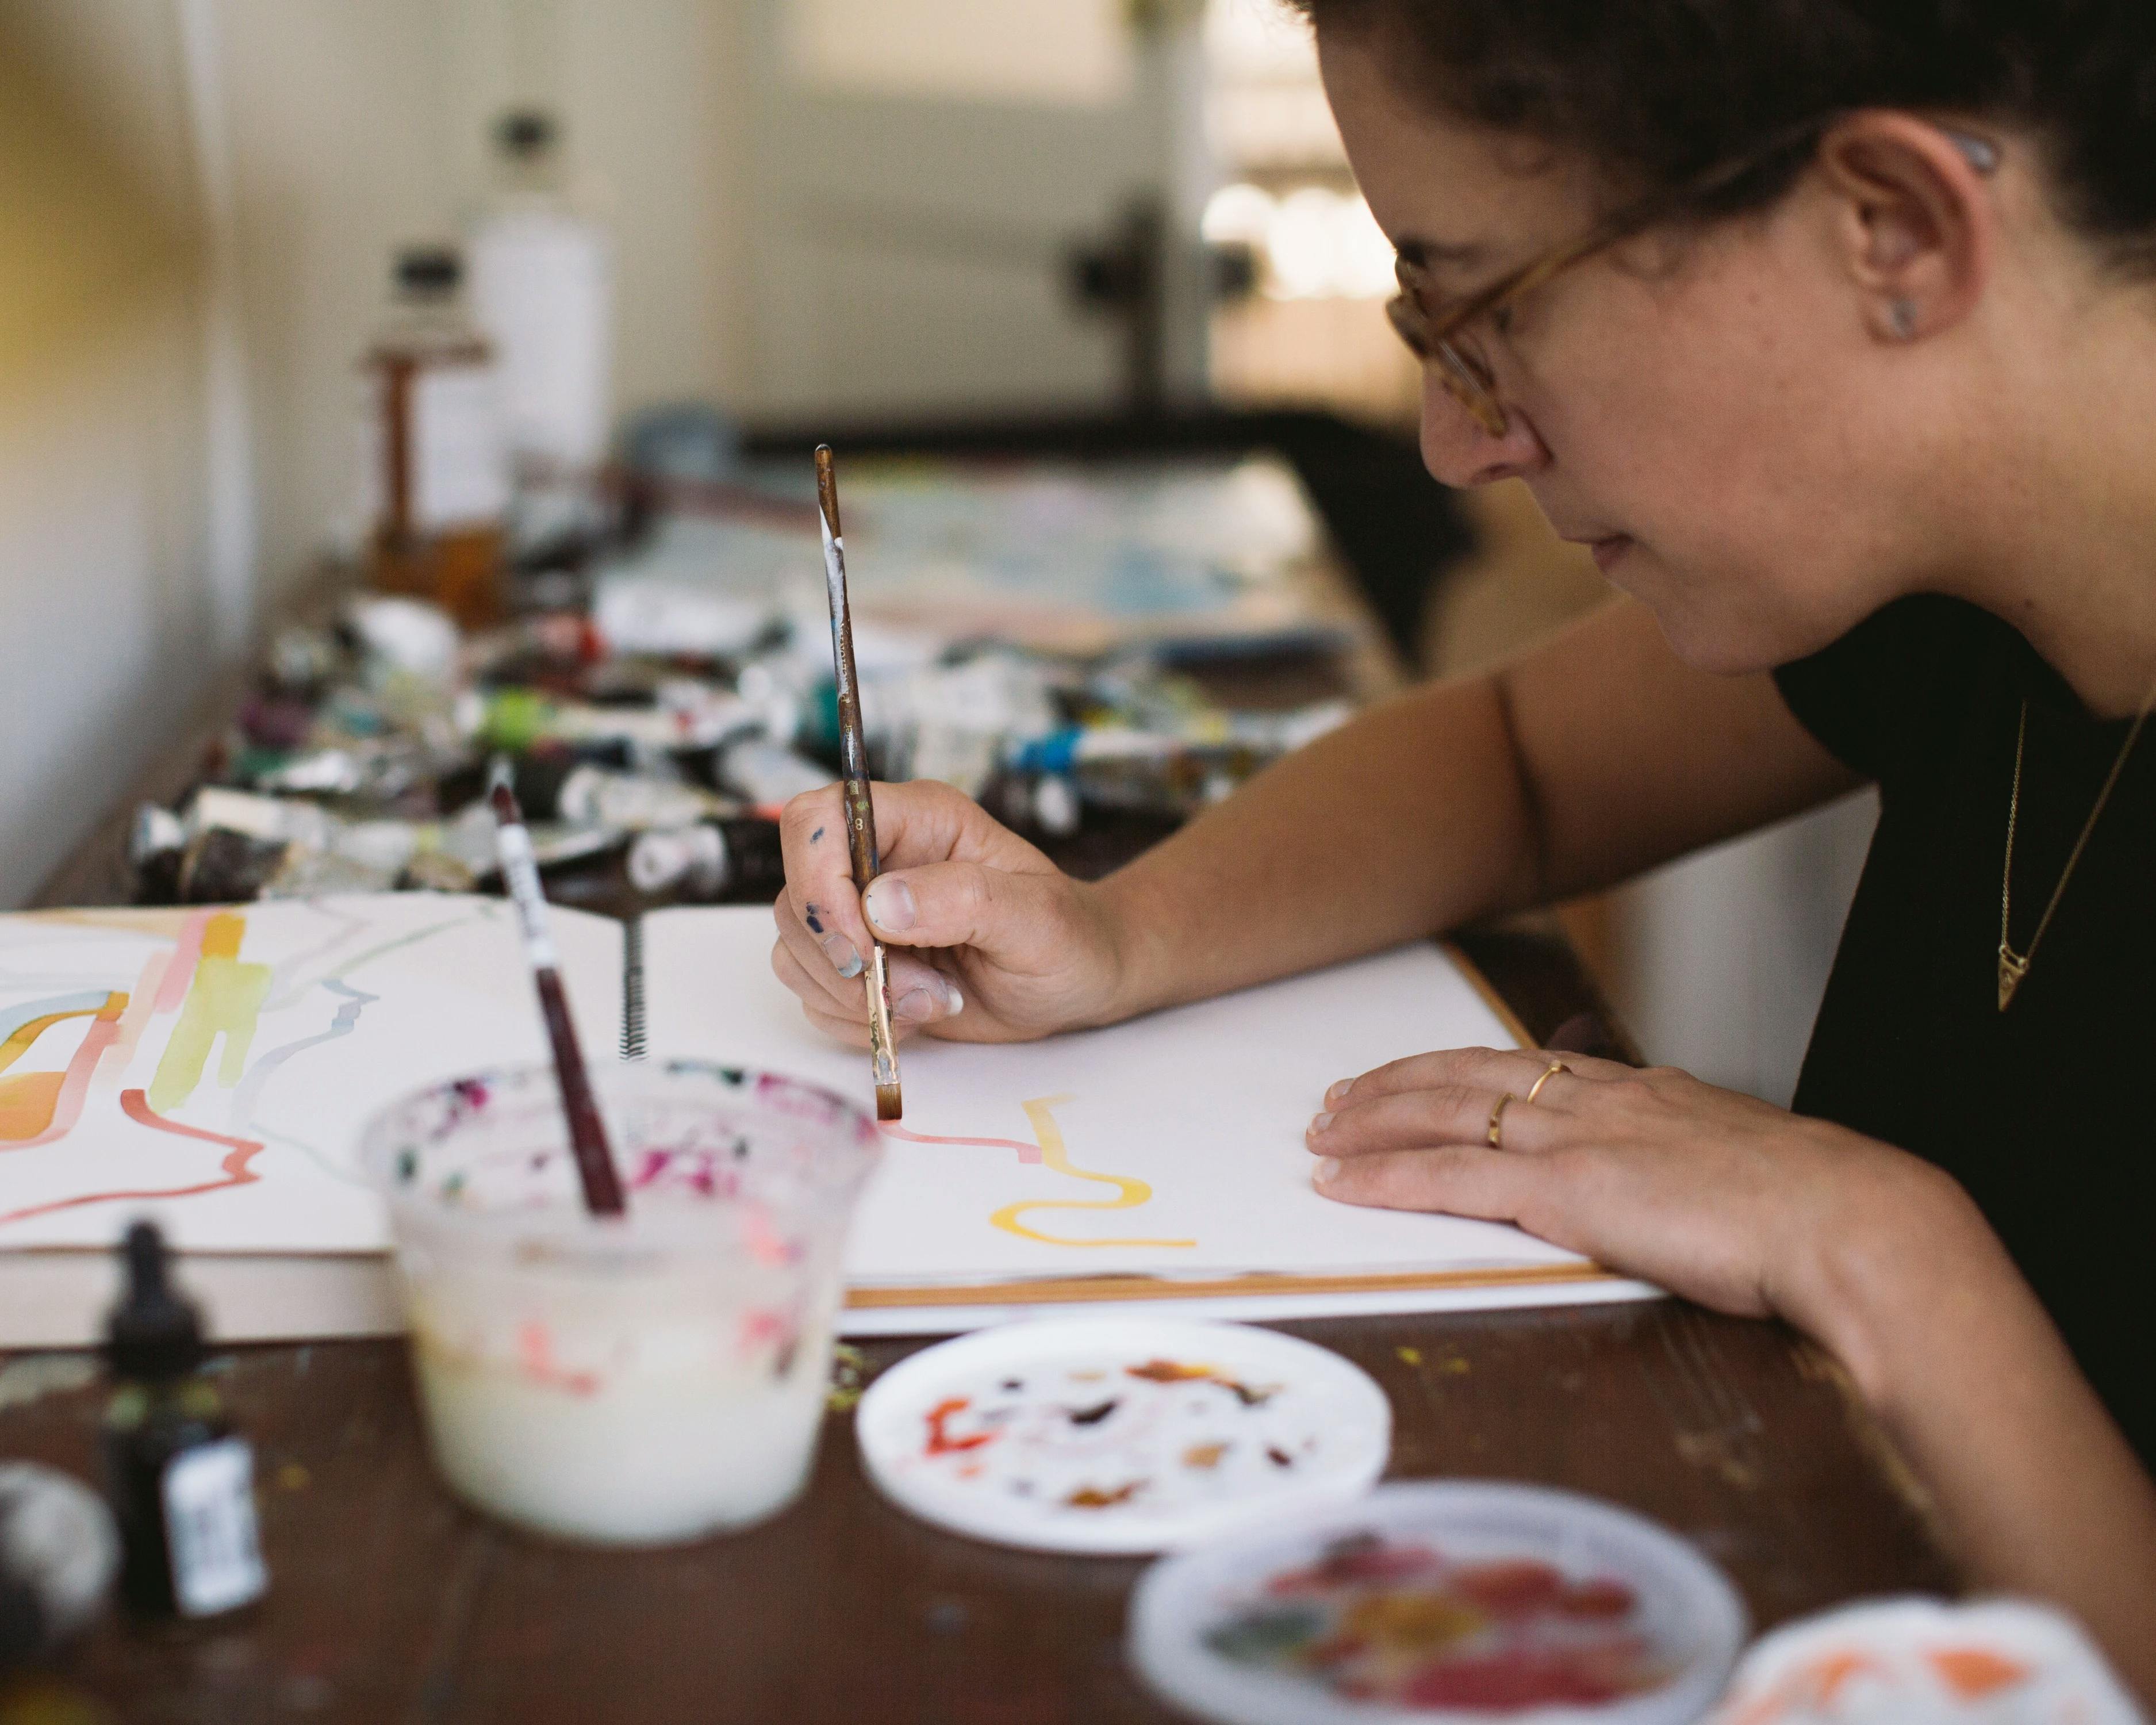 Artist Aliza Cohen painting in her studio.